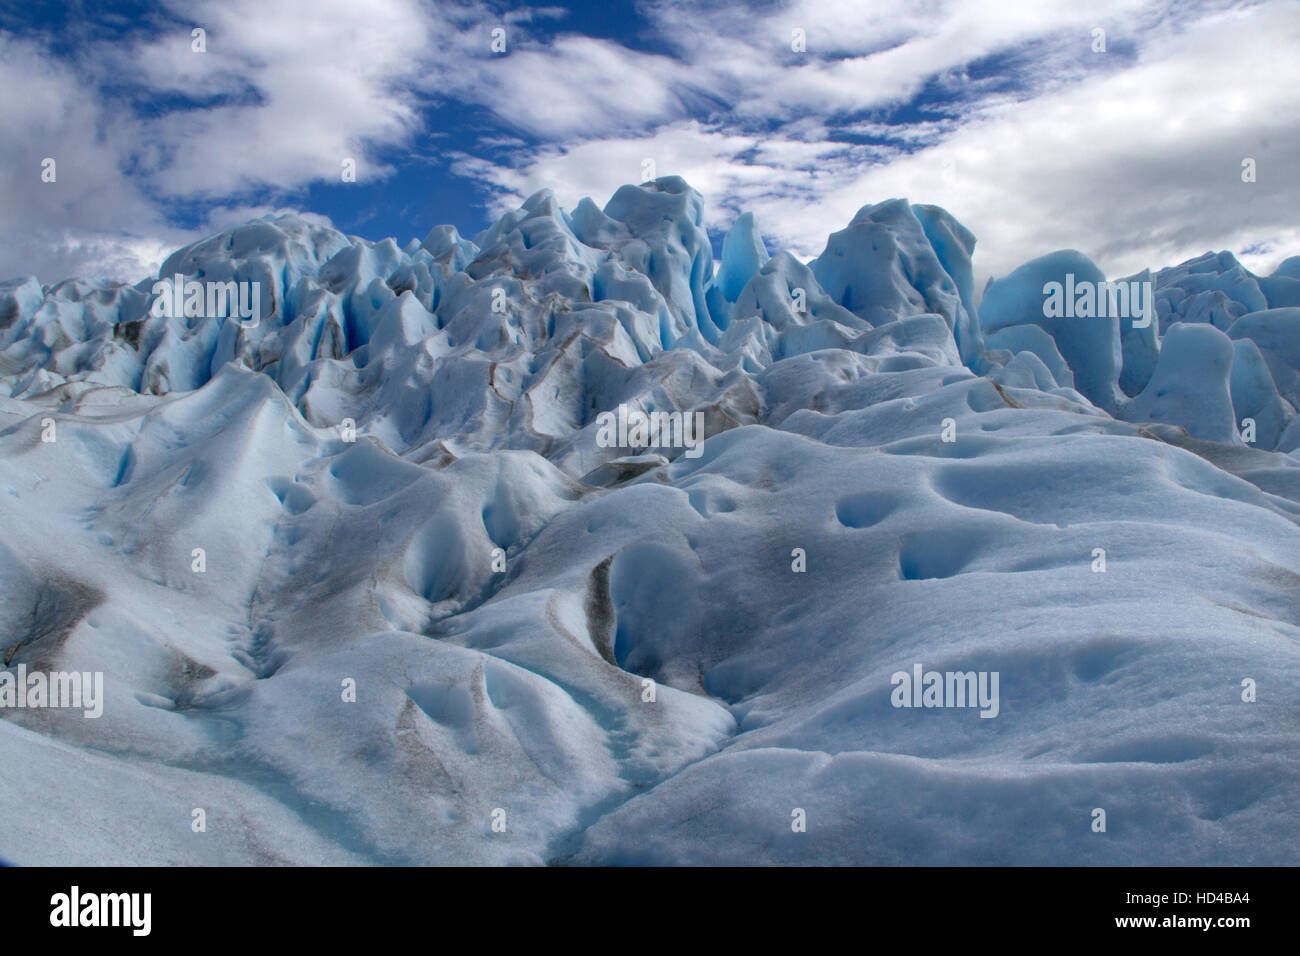 EL CALAFATE, ARG, 06.12.2016: Argentinian Perito Moreno Glacier located in the Los Glaciares National Park in southwest Santa Cruz Province, Argentina Stock Photo